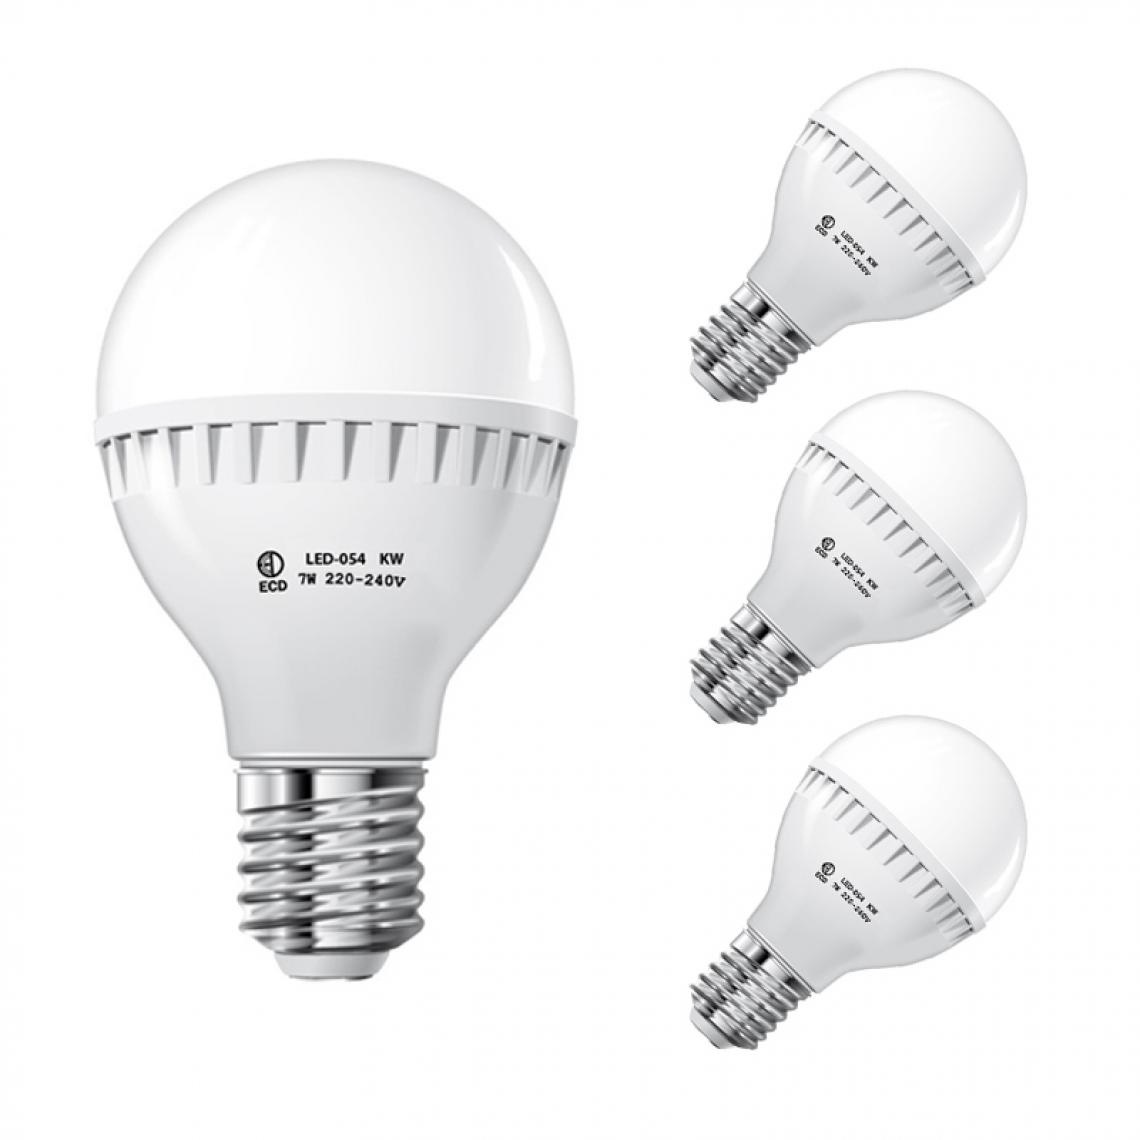 Ecd Germany - ECD Germany 3 x 7W E27 LED Lampe | 6000 Kelvin Blanc Froid | 458 Lumens | 220-240 V | Remplace une Ampoule Halogène de 45 W | Ampoules à Économie d'Énergie - Ampoules LED